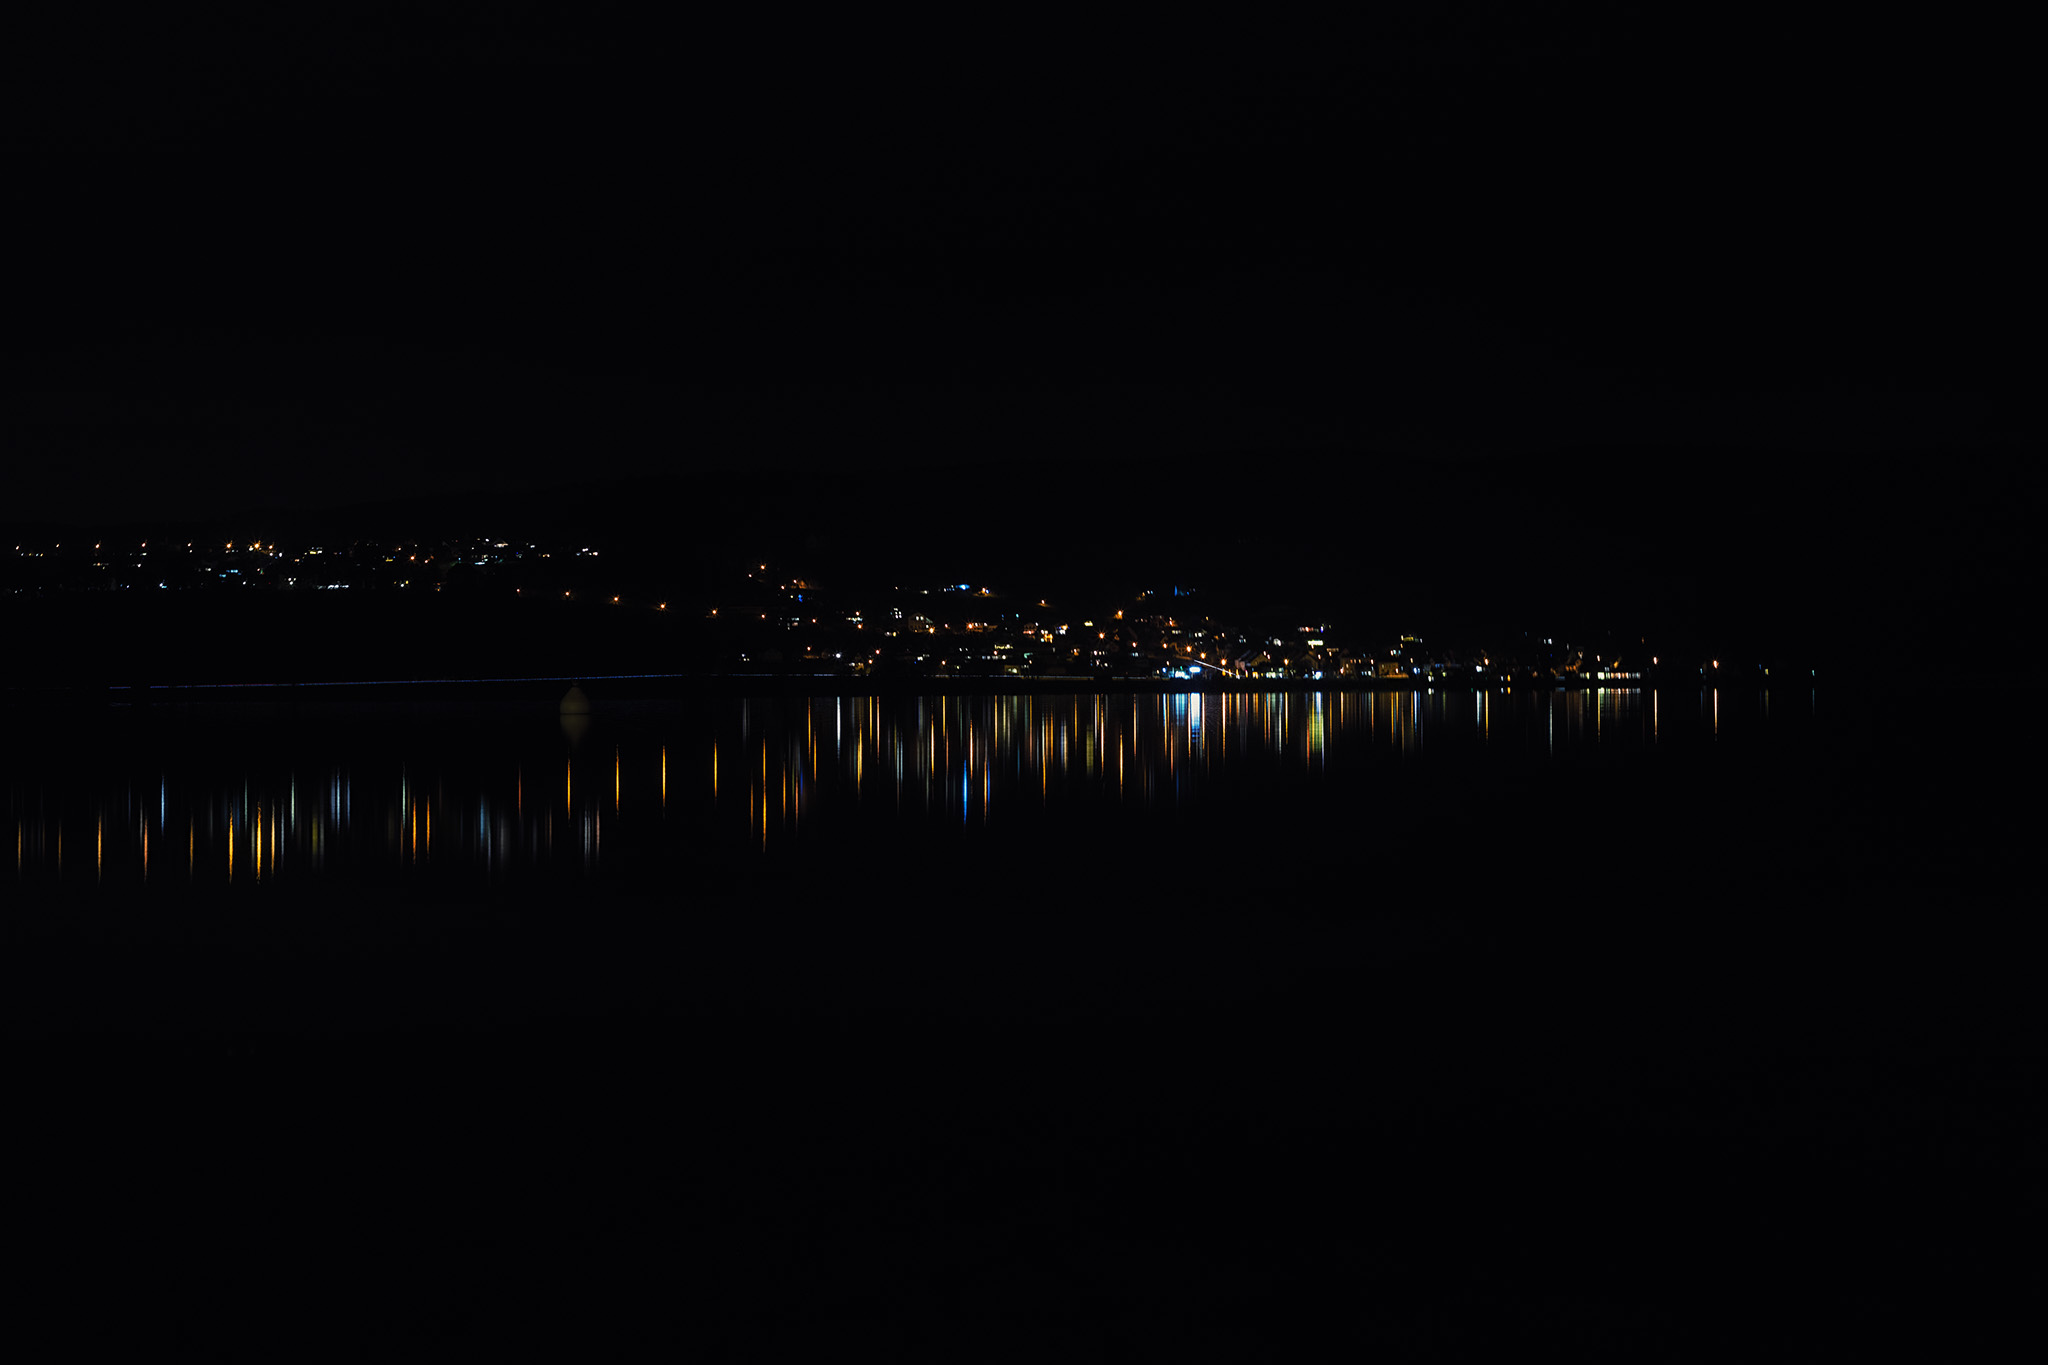 Insel Reichenau bei Nacht